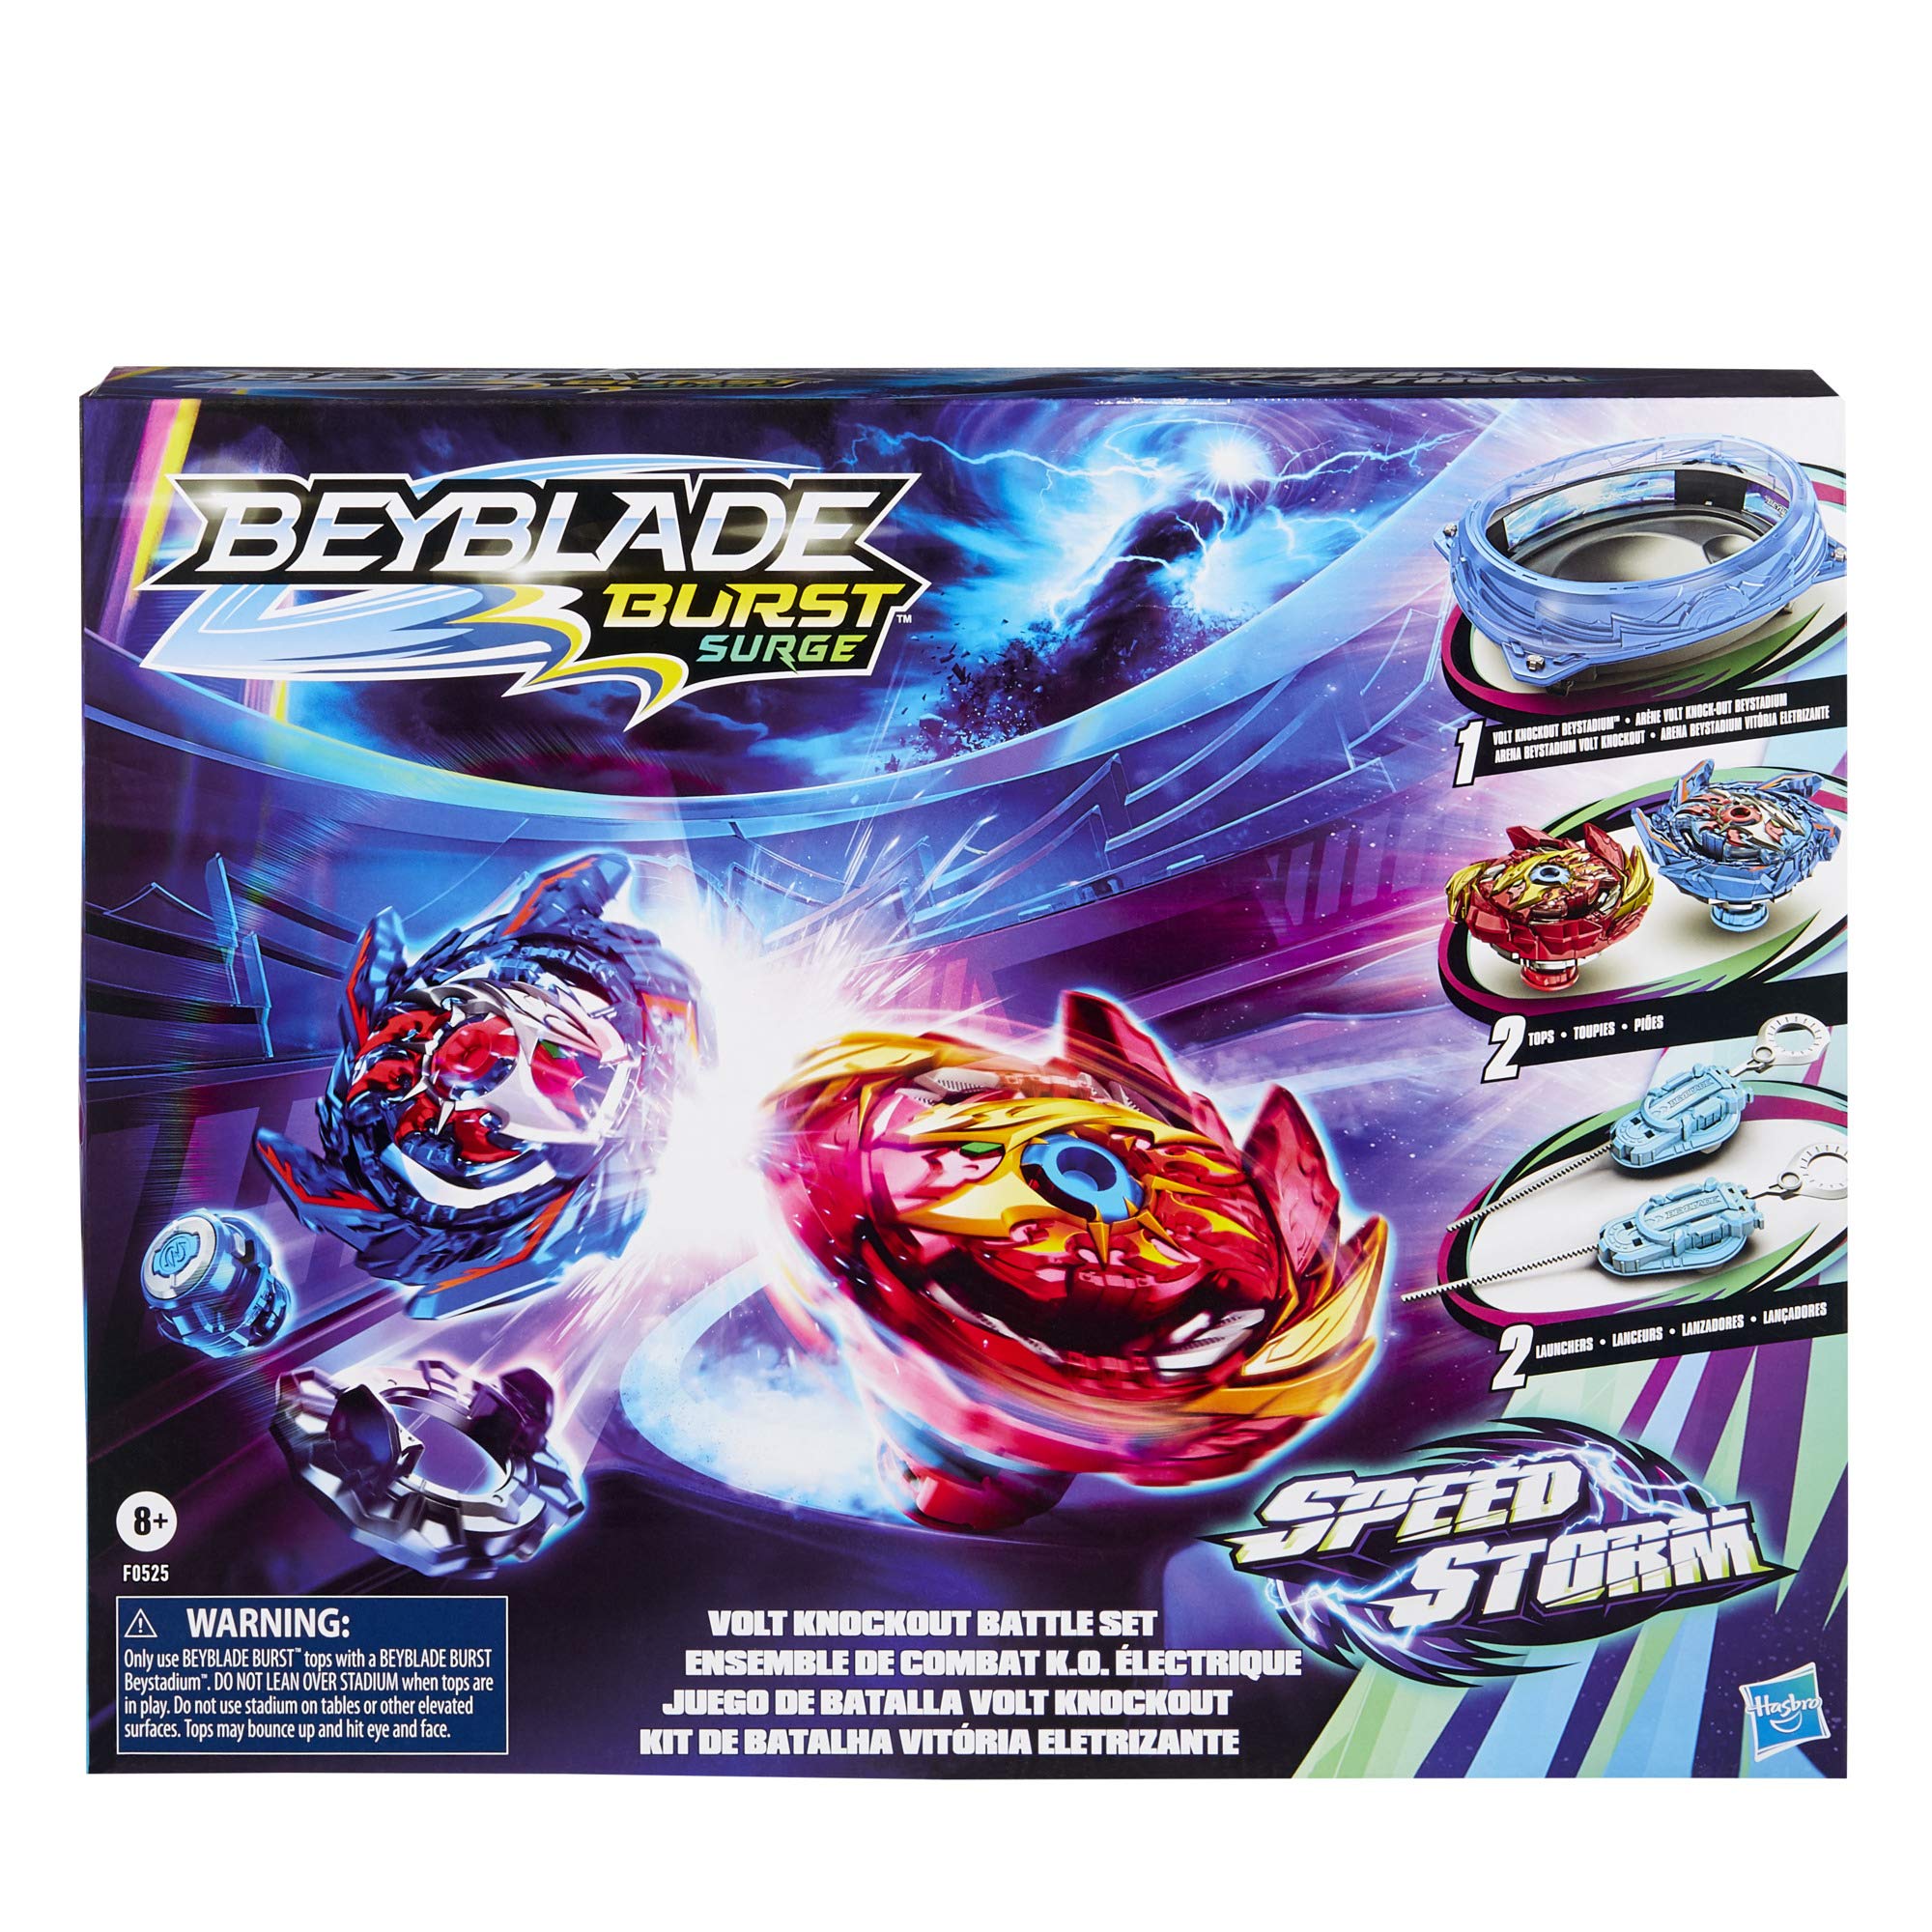 BEYBLADE Burst Surge Speedstorm Volt Knockout Battle Set – Complete Battle Game Set with Beystadium, 2 Battling Top Toys and 2 Launchers